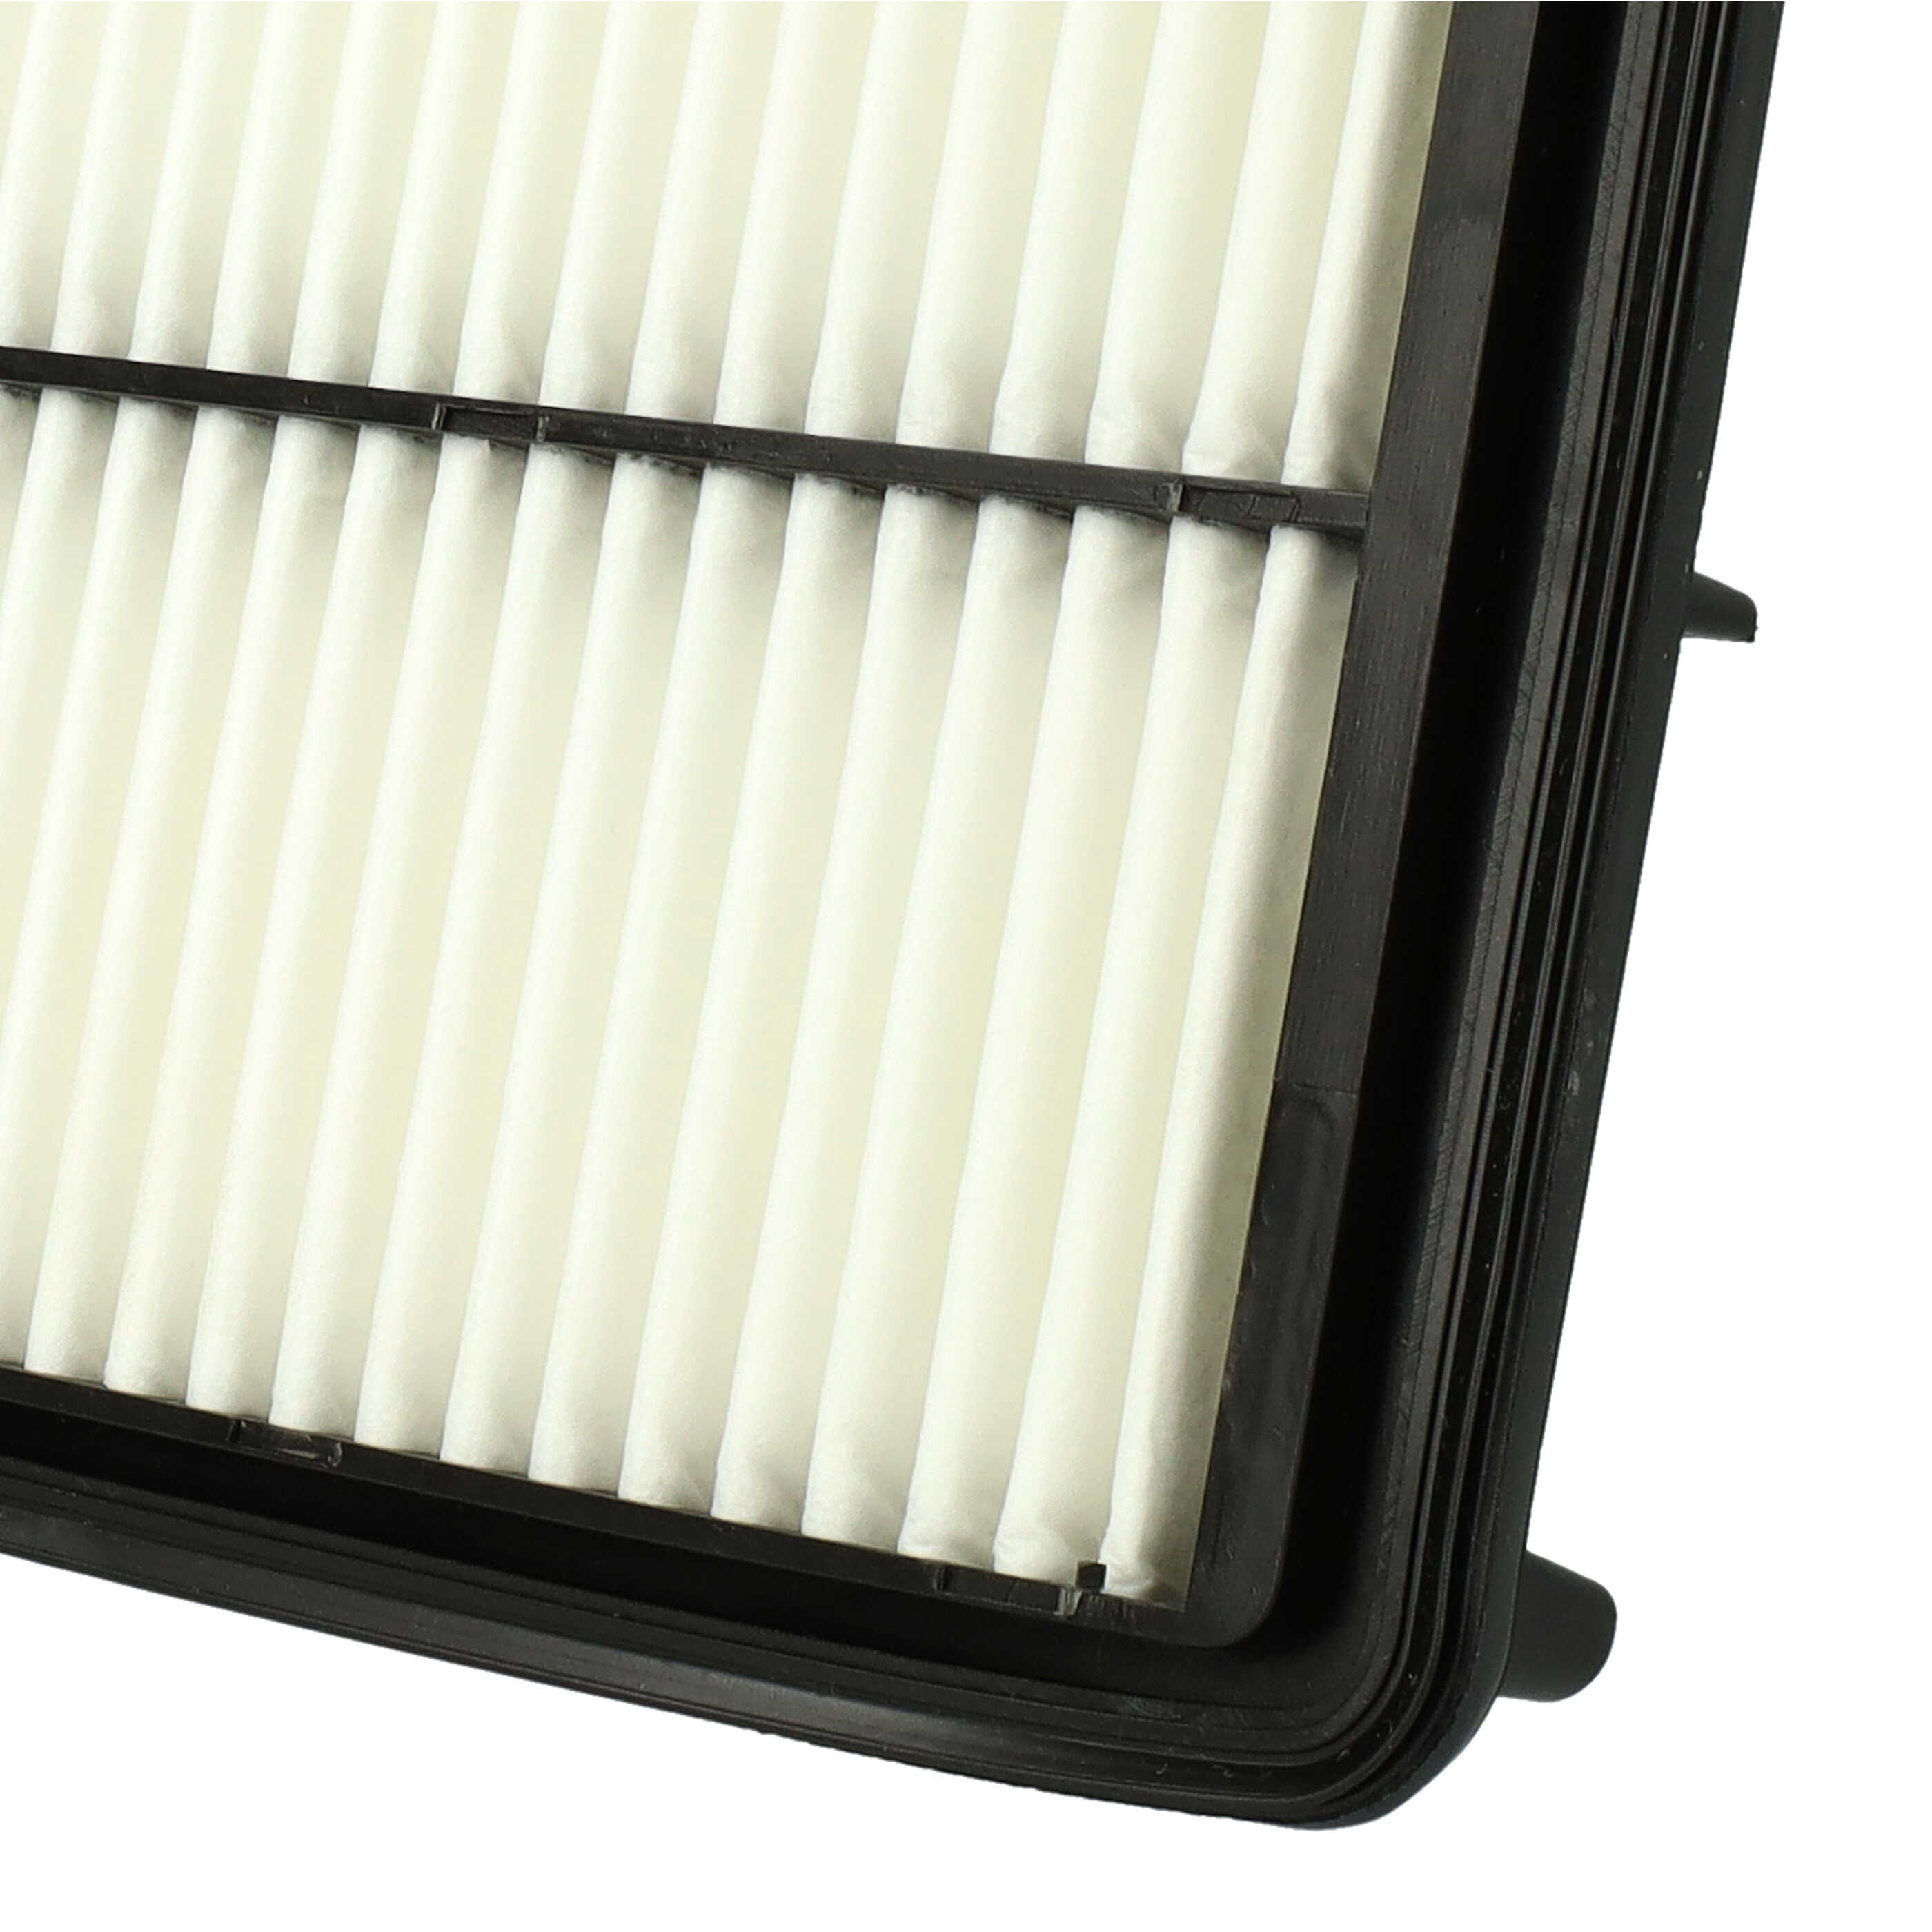 Auto Luftfilter als Ersatz für Hyundai 28113-4H000 - Motor-Filter